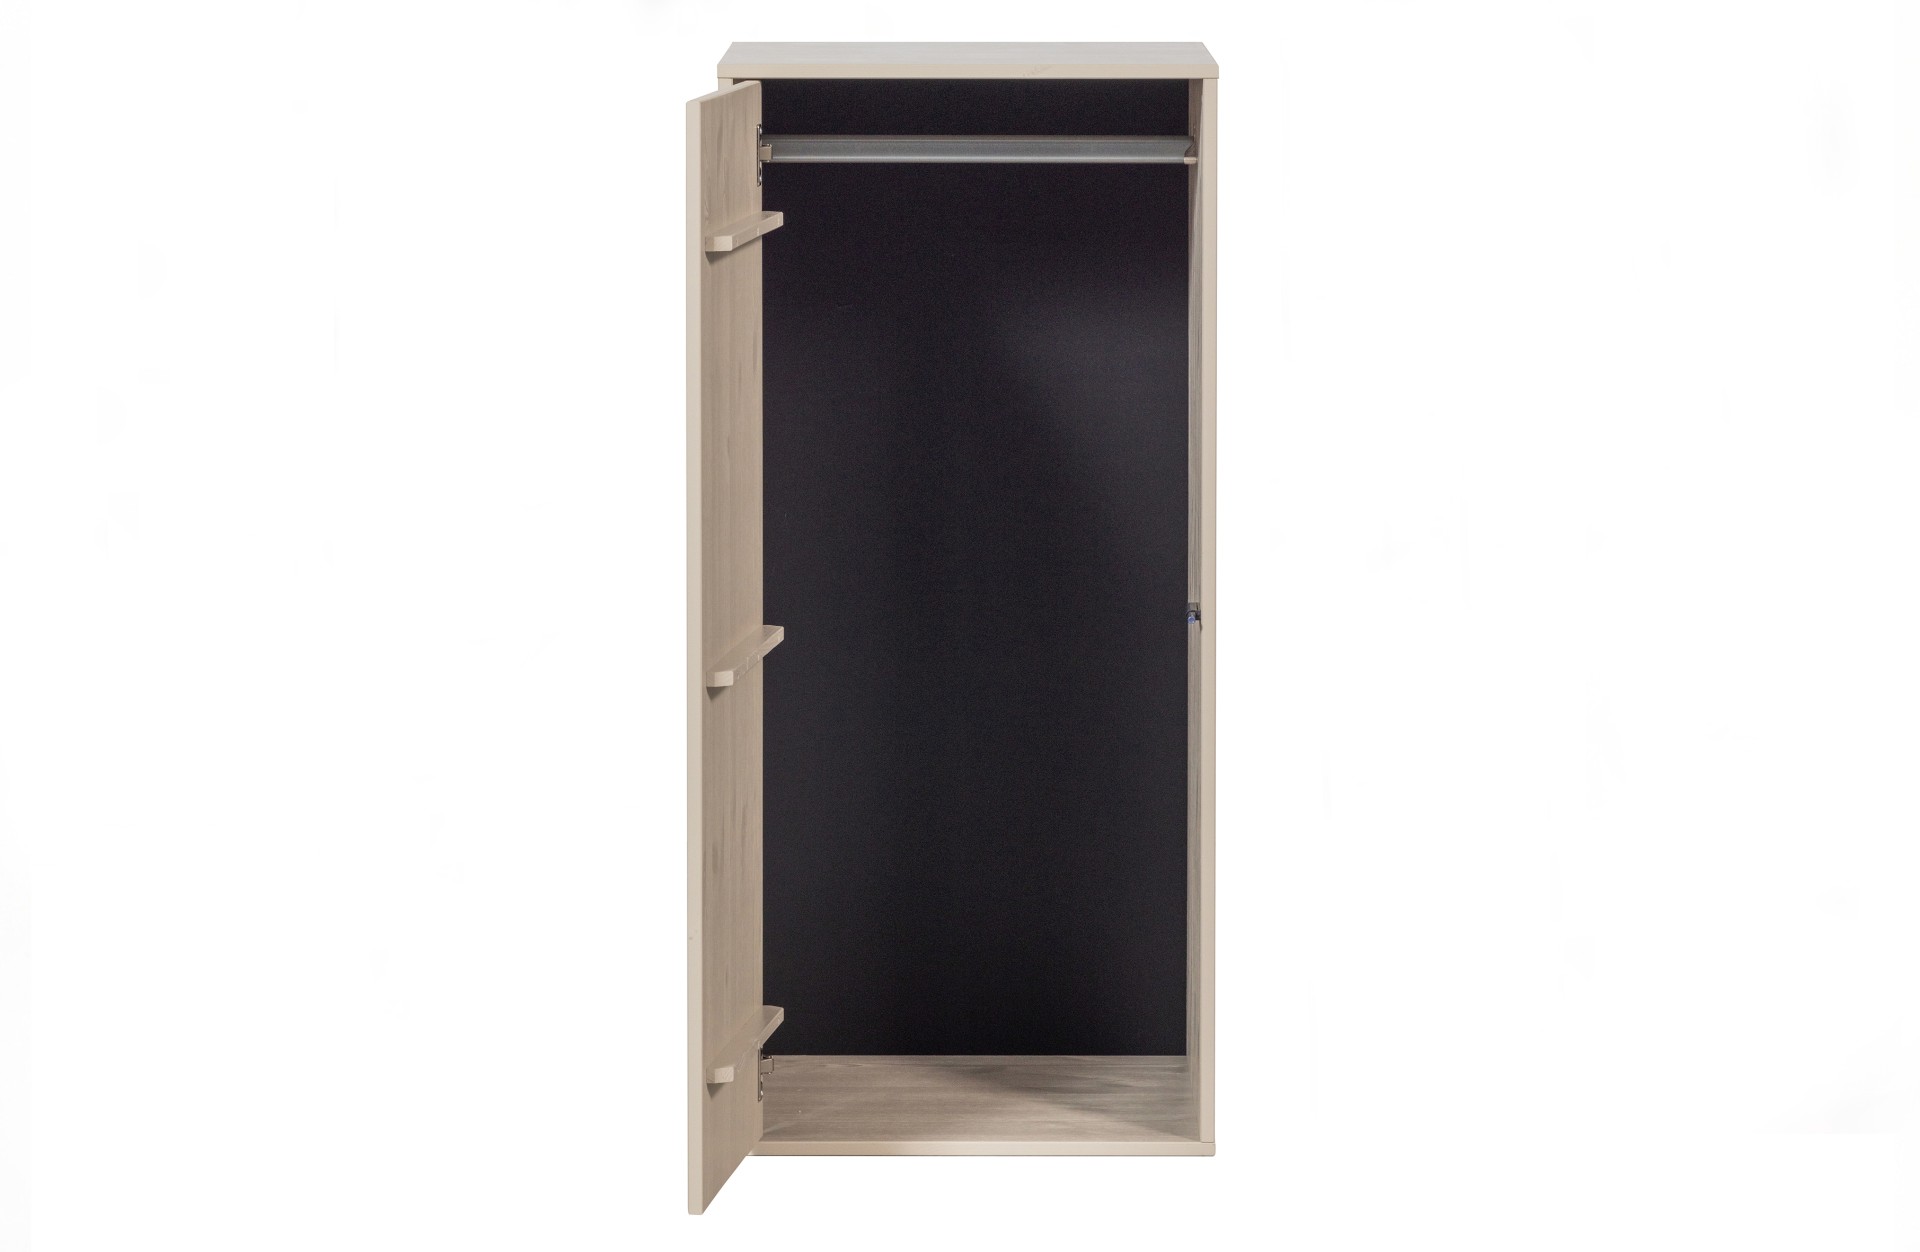 Der Modulschrank Daily Closet überzeugt mit seinem modernen Design. Gefertigt wurde er aus Kiefernholz, welches einen grauen Farbton besitzt. Der Schrank verfügt über eine Tür und hat eine Größe von 110x50 cm